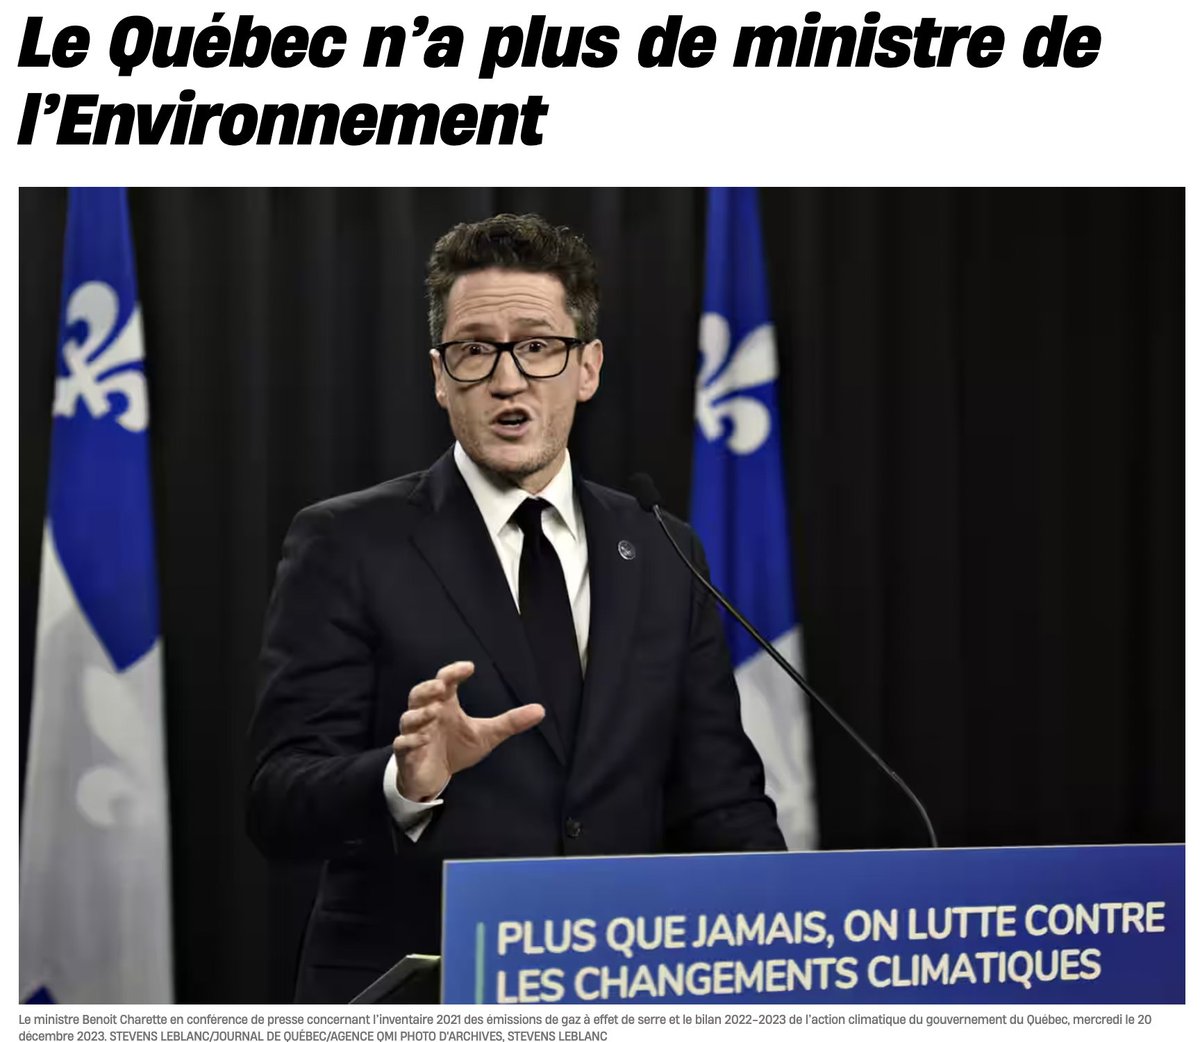 🌎En ce #jourdelaterre2024, le Québec n'a plus de ministre de l'Environnement.
Souhaitons-nous bonne chance! 🍀
#CAQ #polqc #Québec #Environnement #AssNat #CriseClimatique #Caribou #Rouyn #Northvolt #RayMontLogistiques #RainettesLongueuil